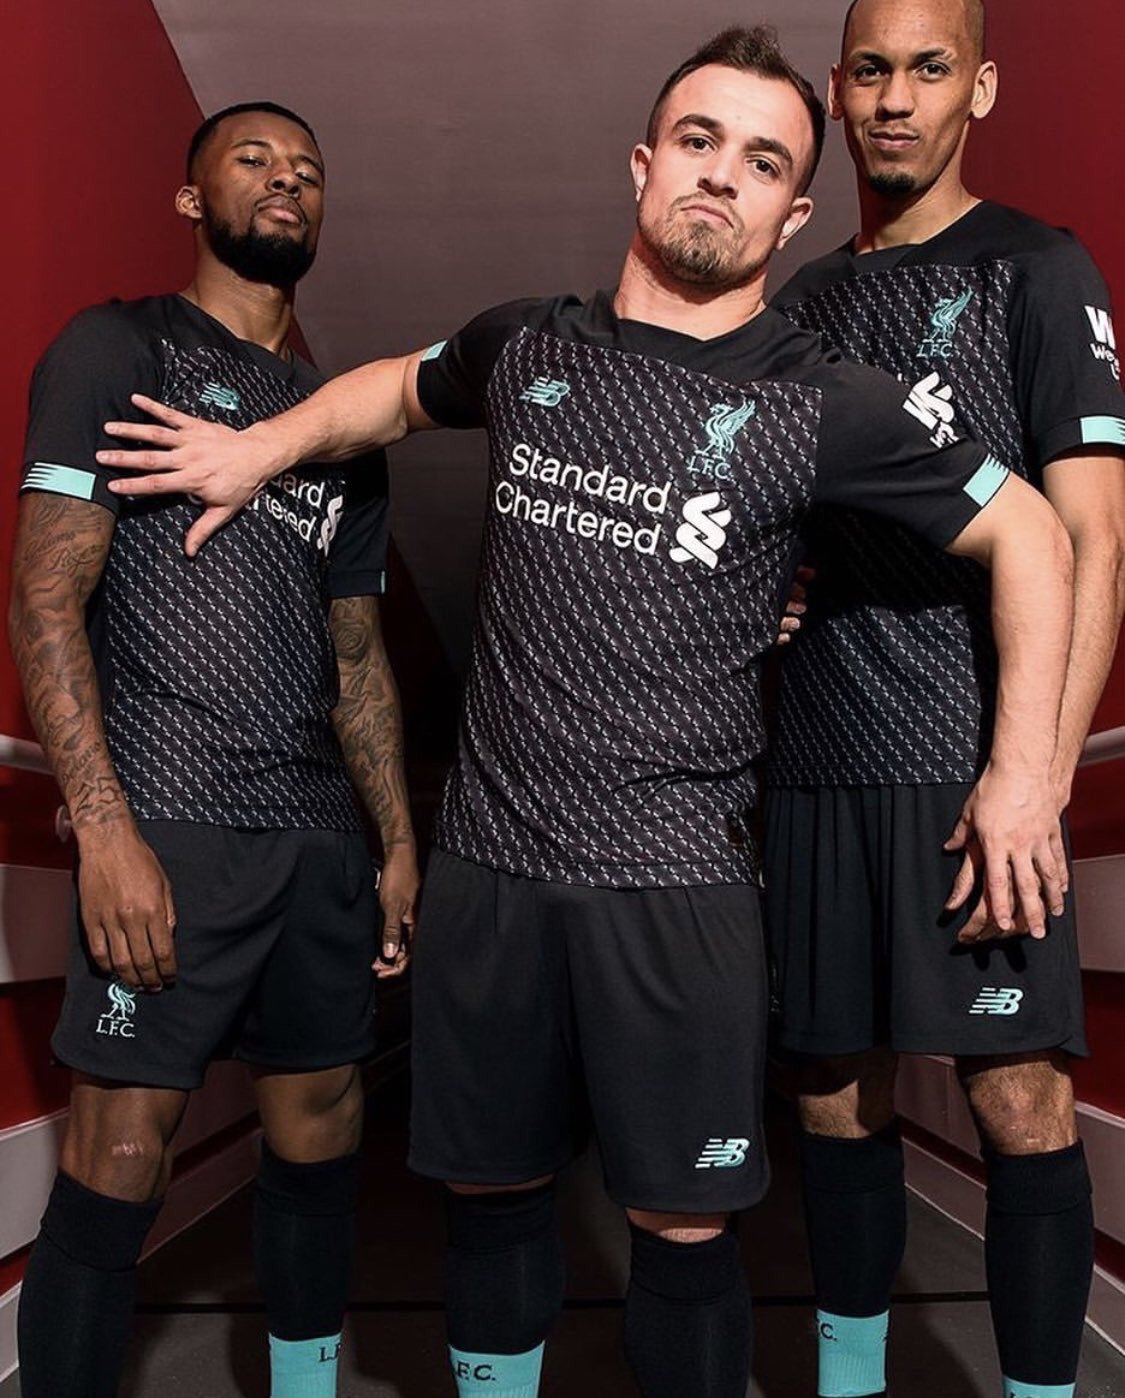 Liverpool 2020 nouveau maillot third officiel foot